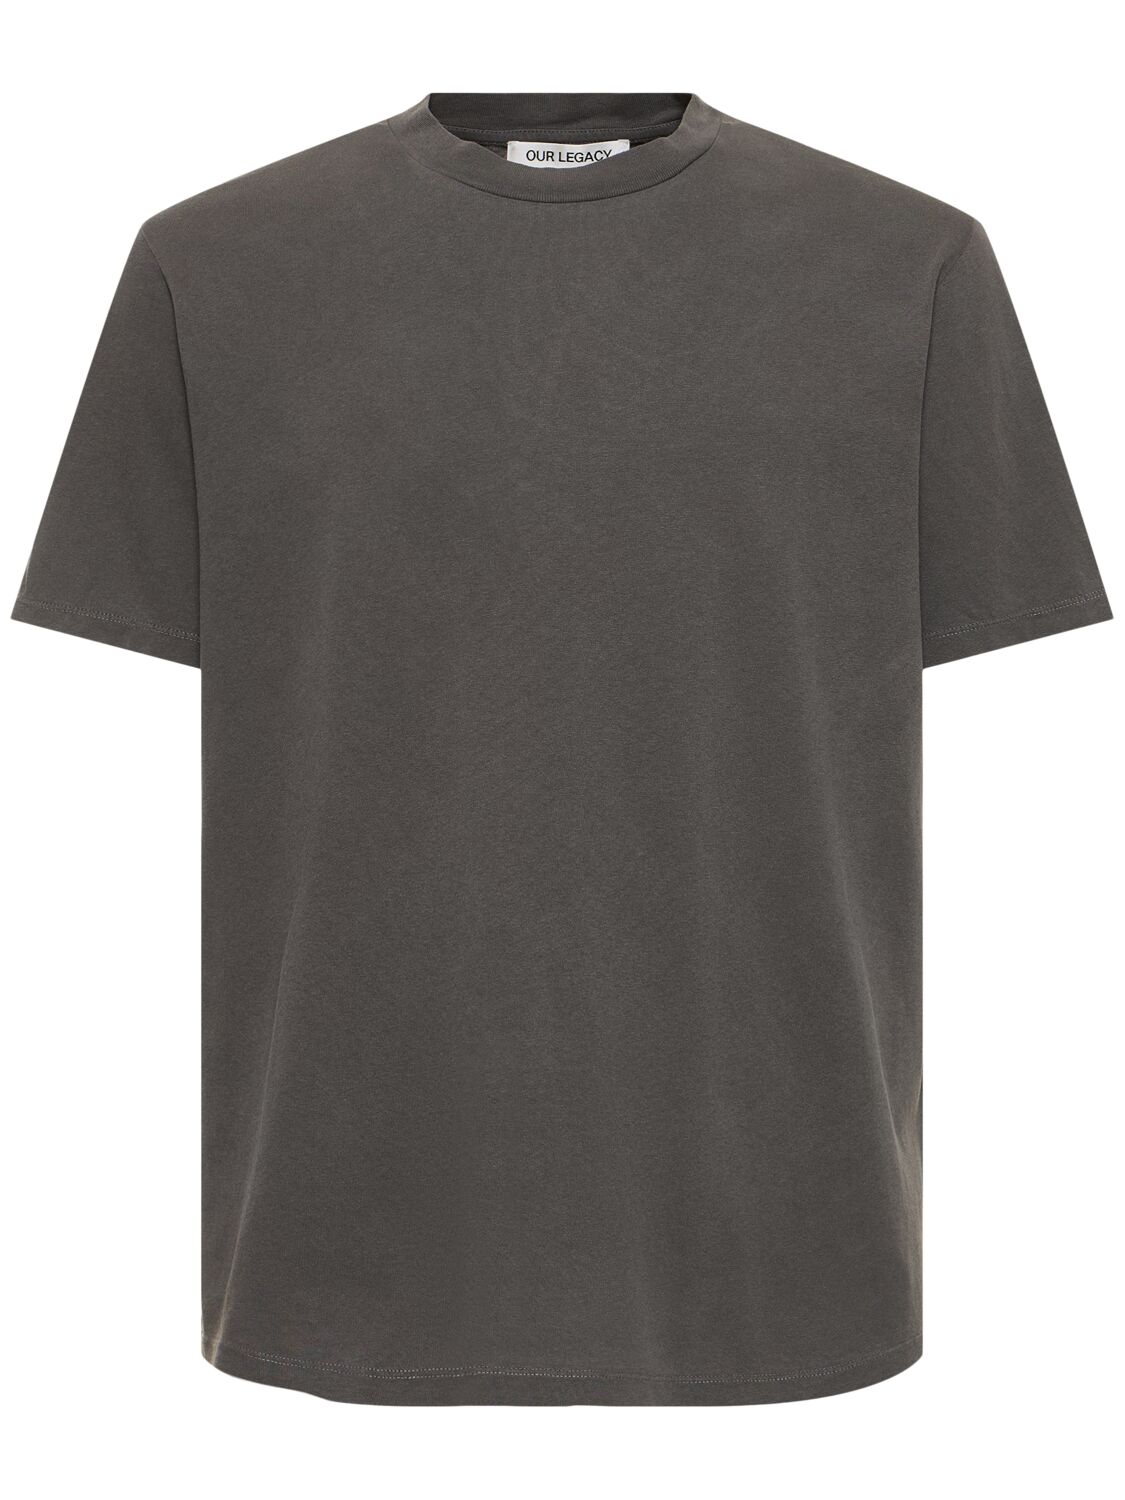 Image of Cotton Jersey Boxy T-shirt